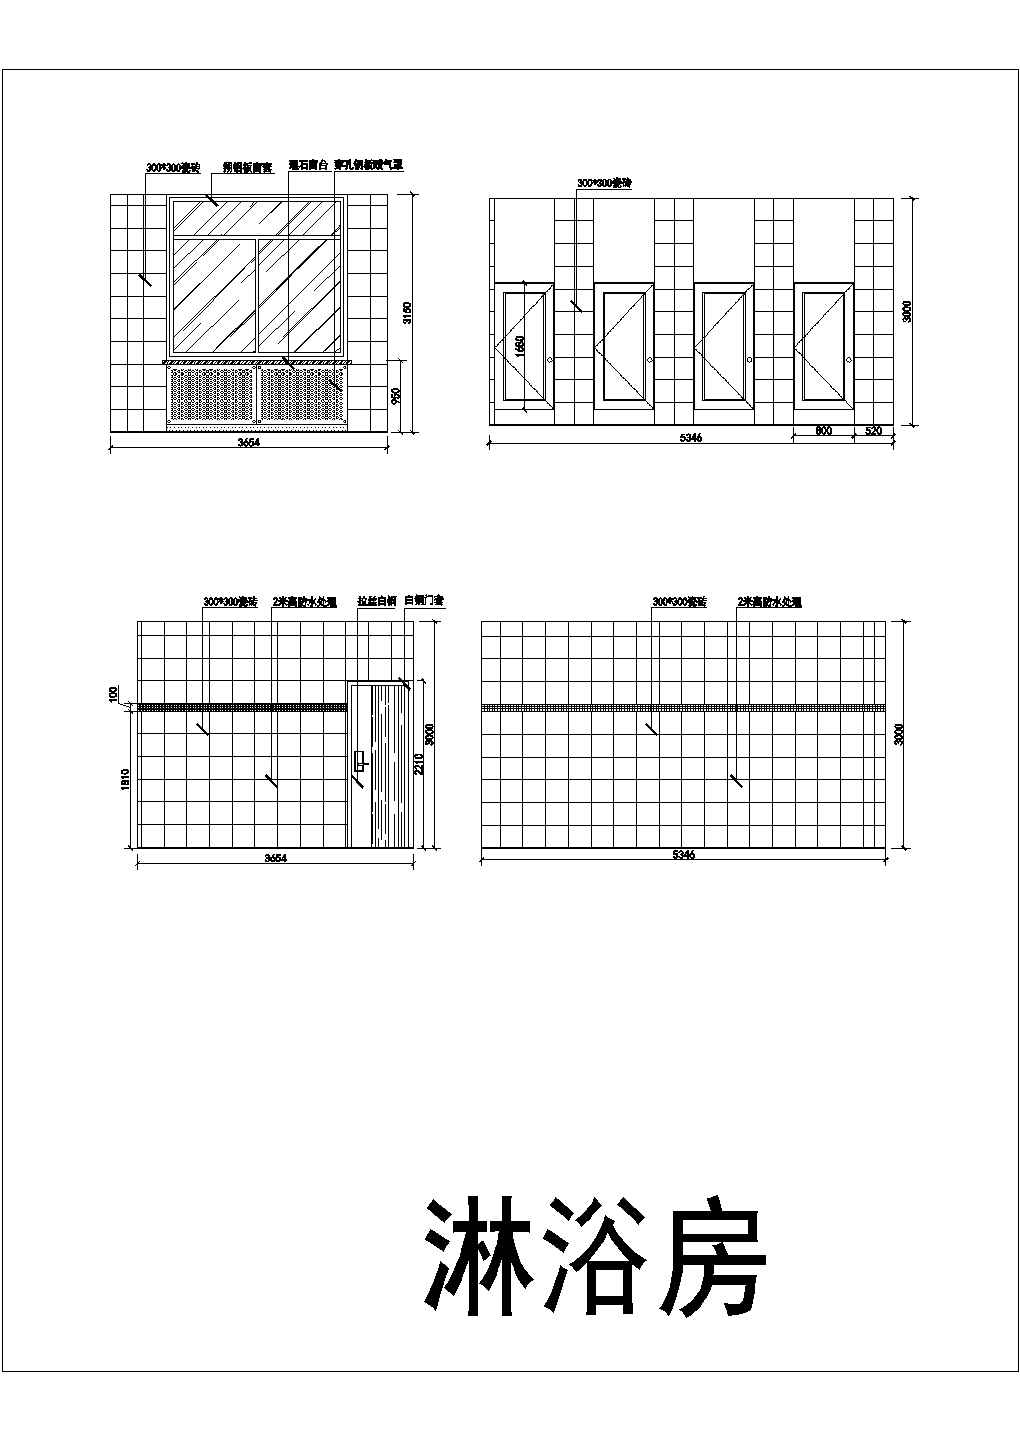 某图书馆CAD建筑设计施工图附效果图